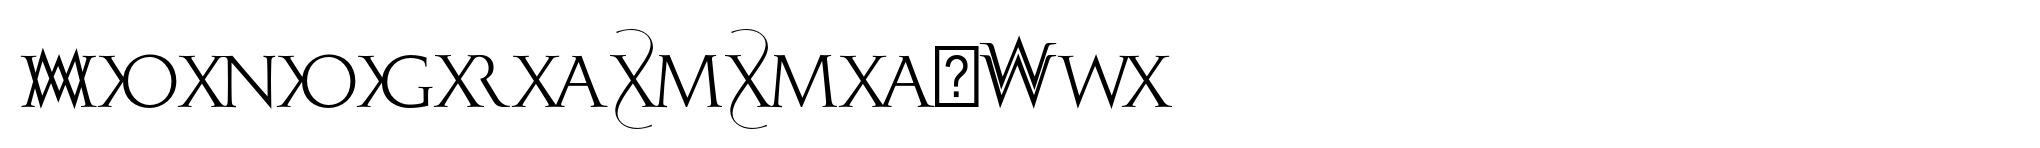 Monogramma-WX image